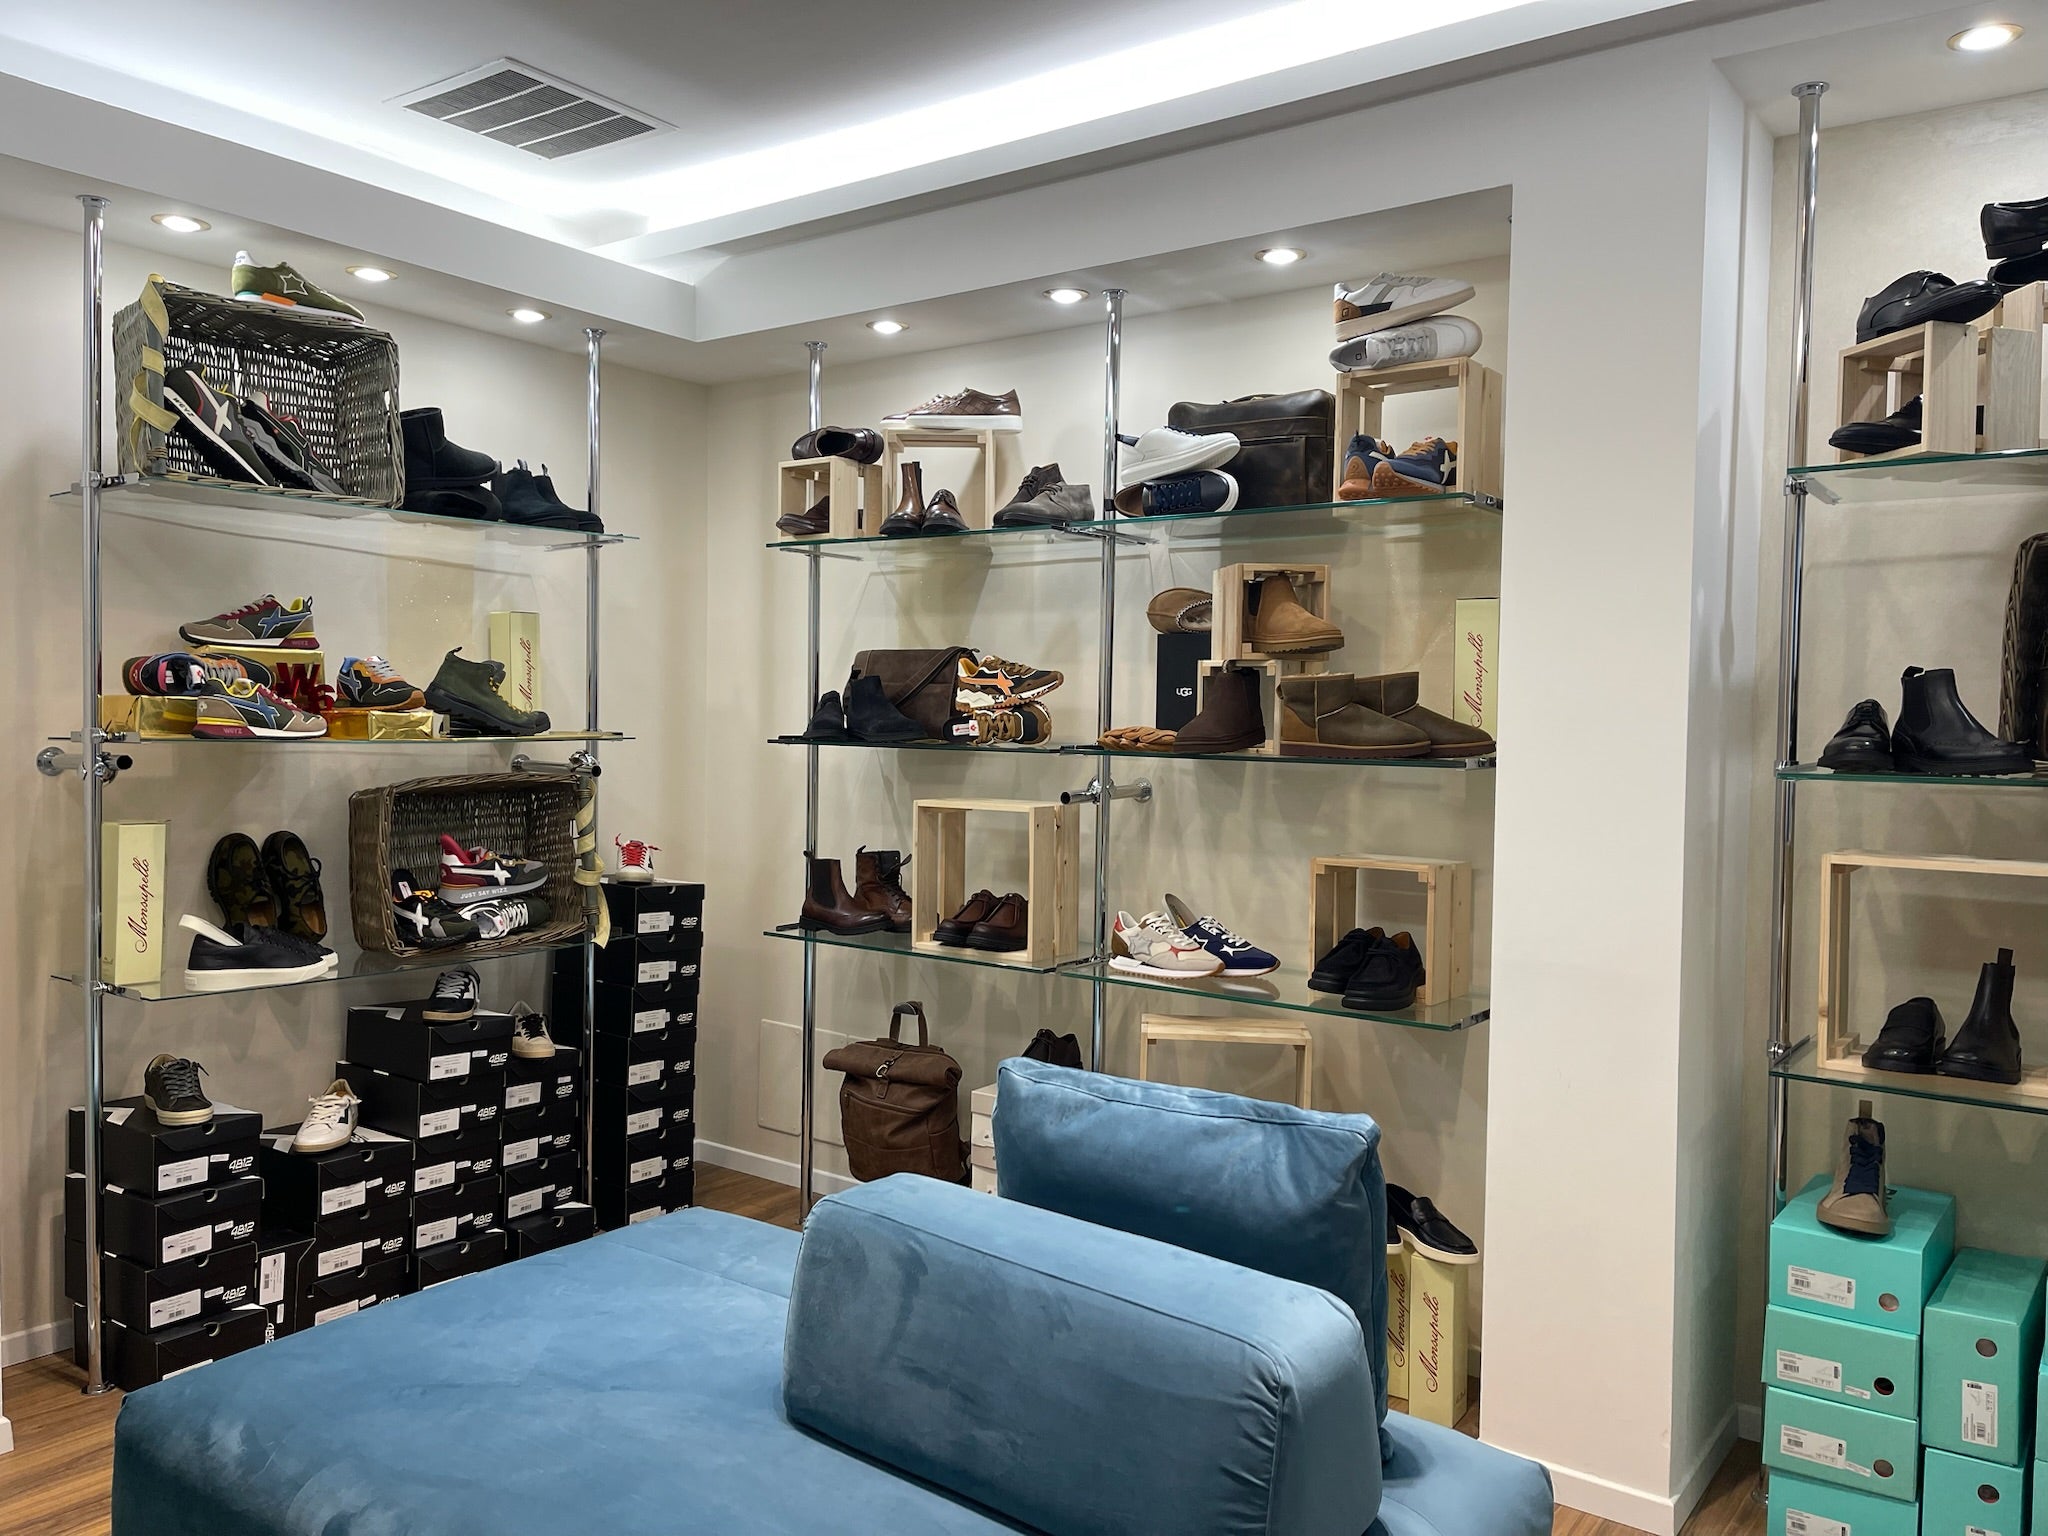 frendi-90-calzature-scarpe-negozio-pavia-corso-garibaldi-store-shop-desktop-e-commerce